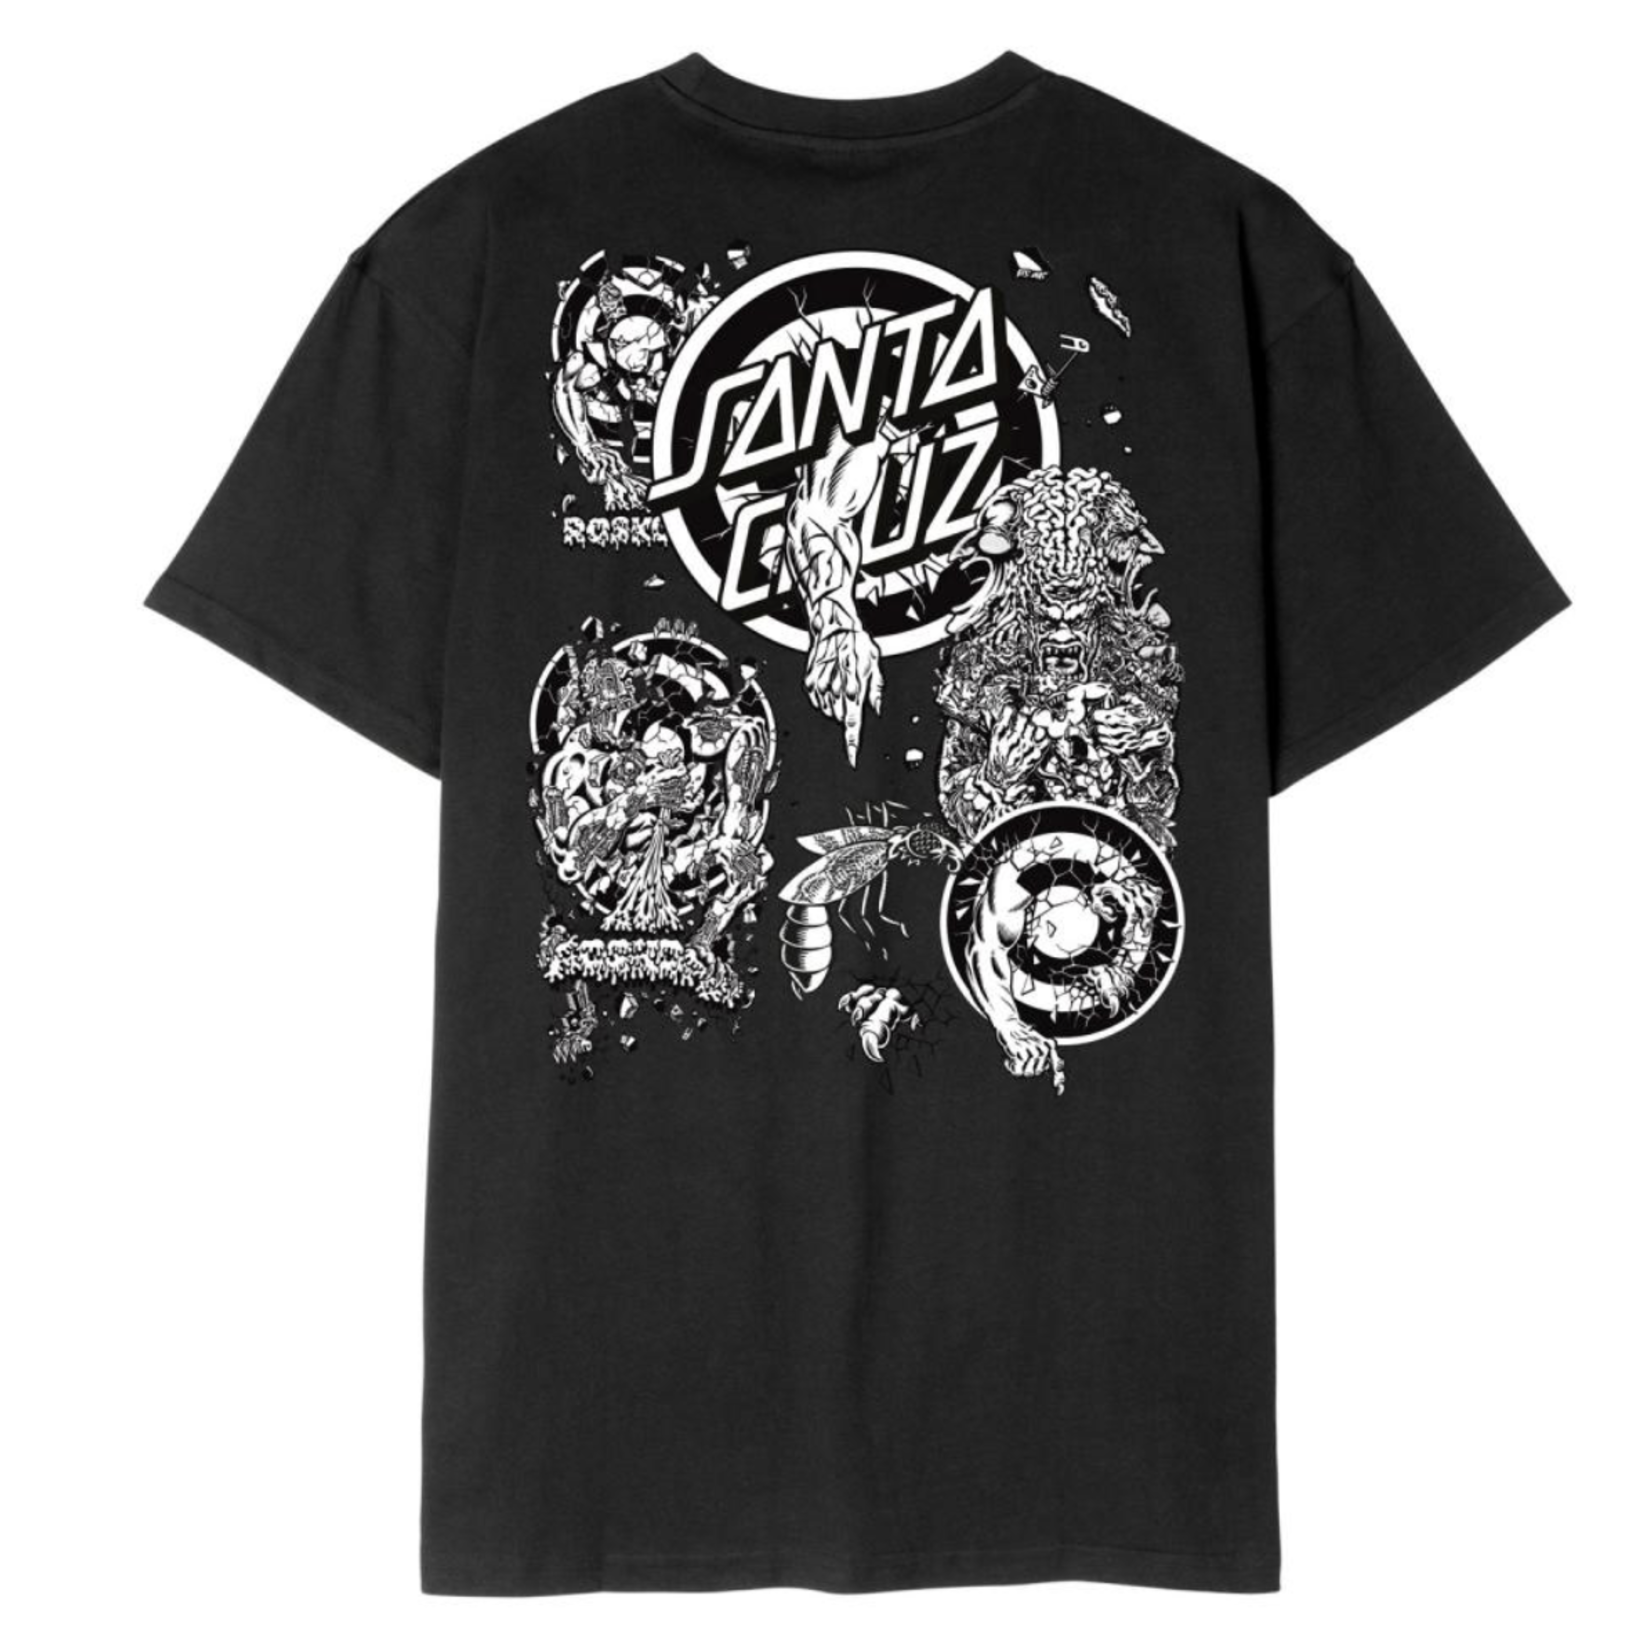 SANTA CRUZ Santa Cruz T-Shirt Roskopp Evo 2	Black